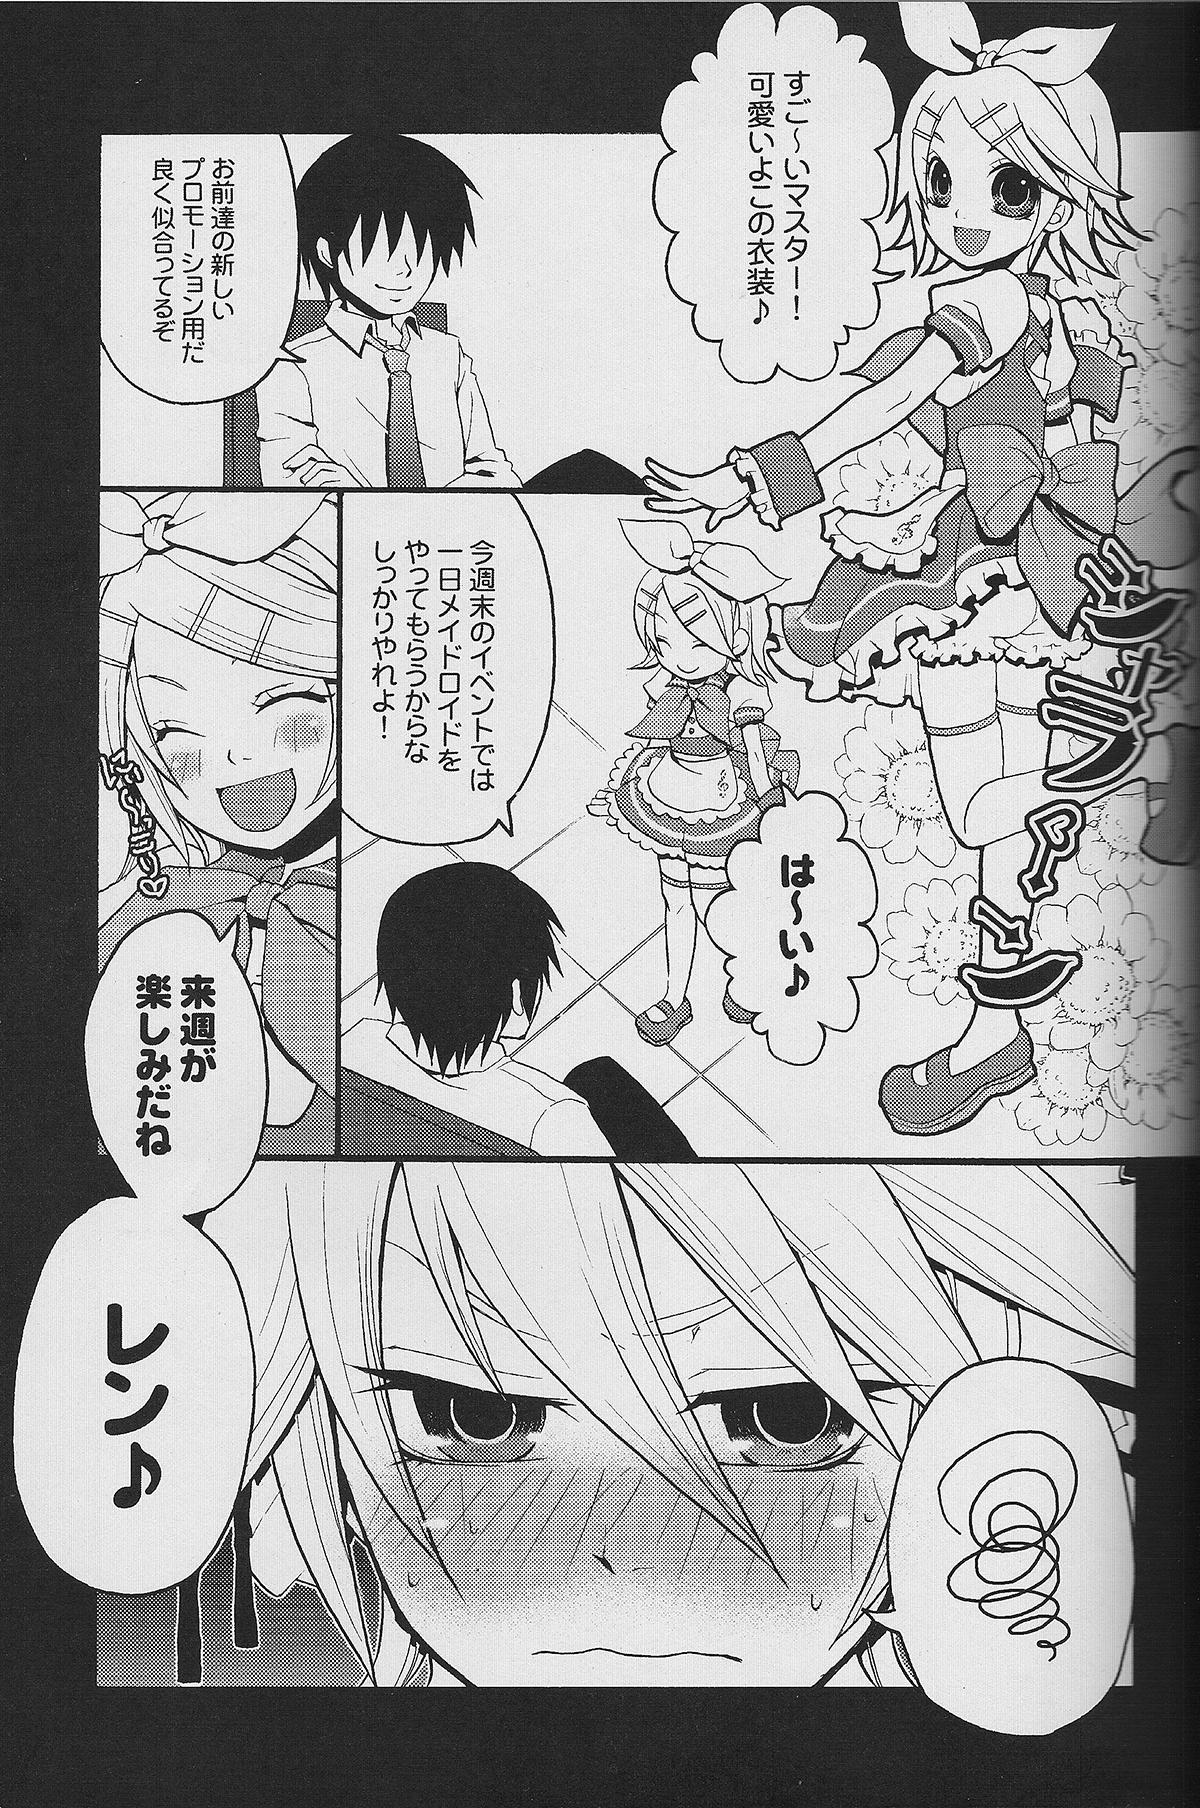 Negra TsundeLen Cafe Betsubara! - Vocaloid Man - Page 6